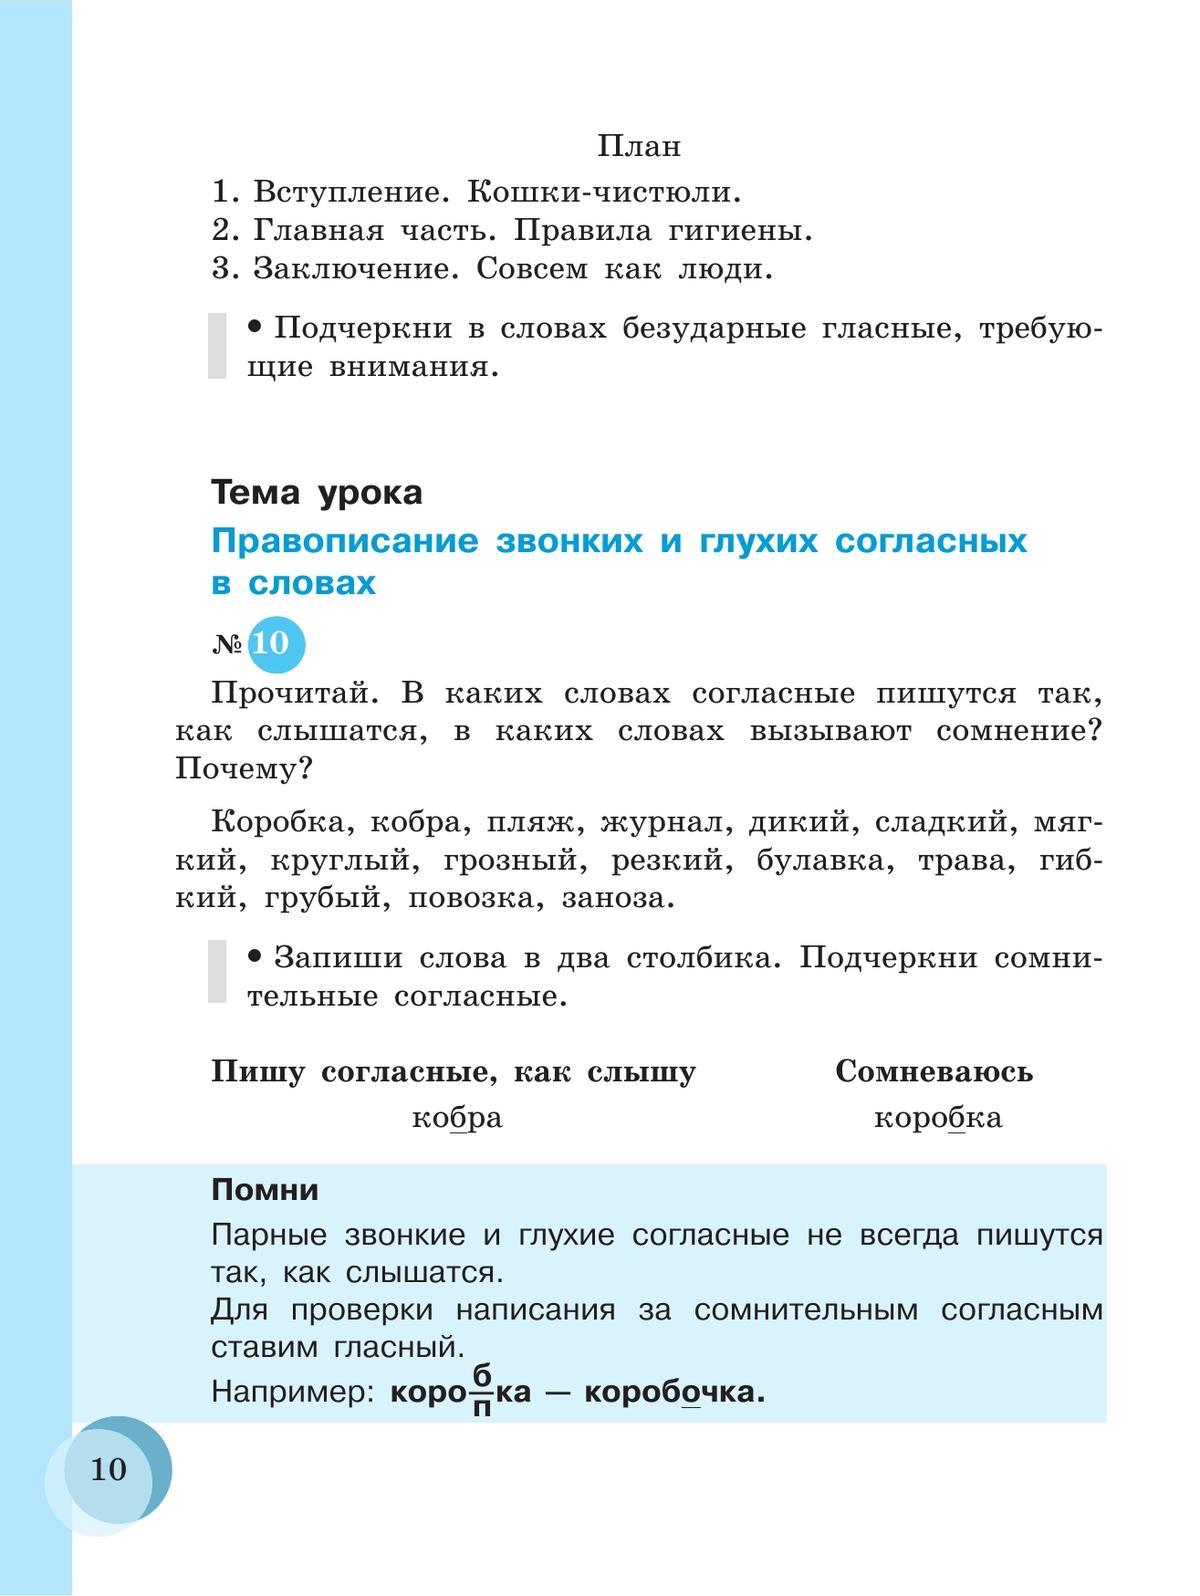 Русский язык. 7 класс. Учебник (для обучающихся с интеллектуальными нарушениями) 8